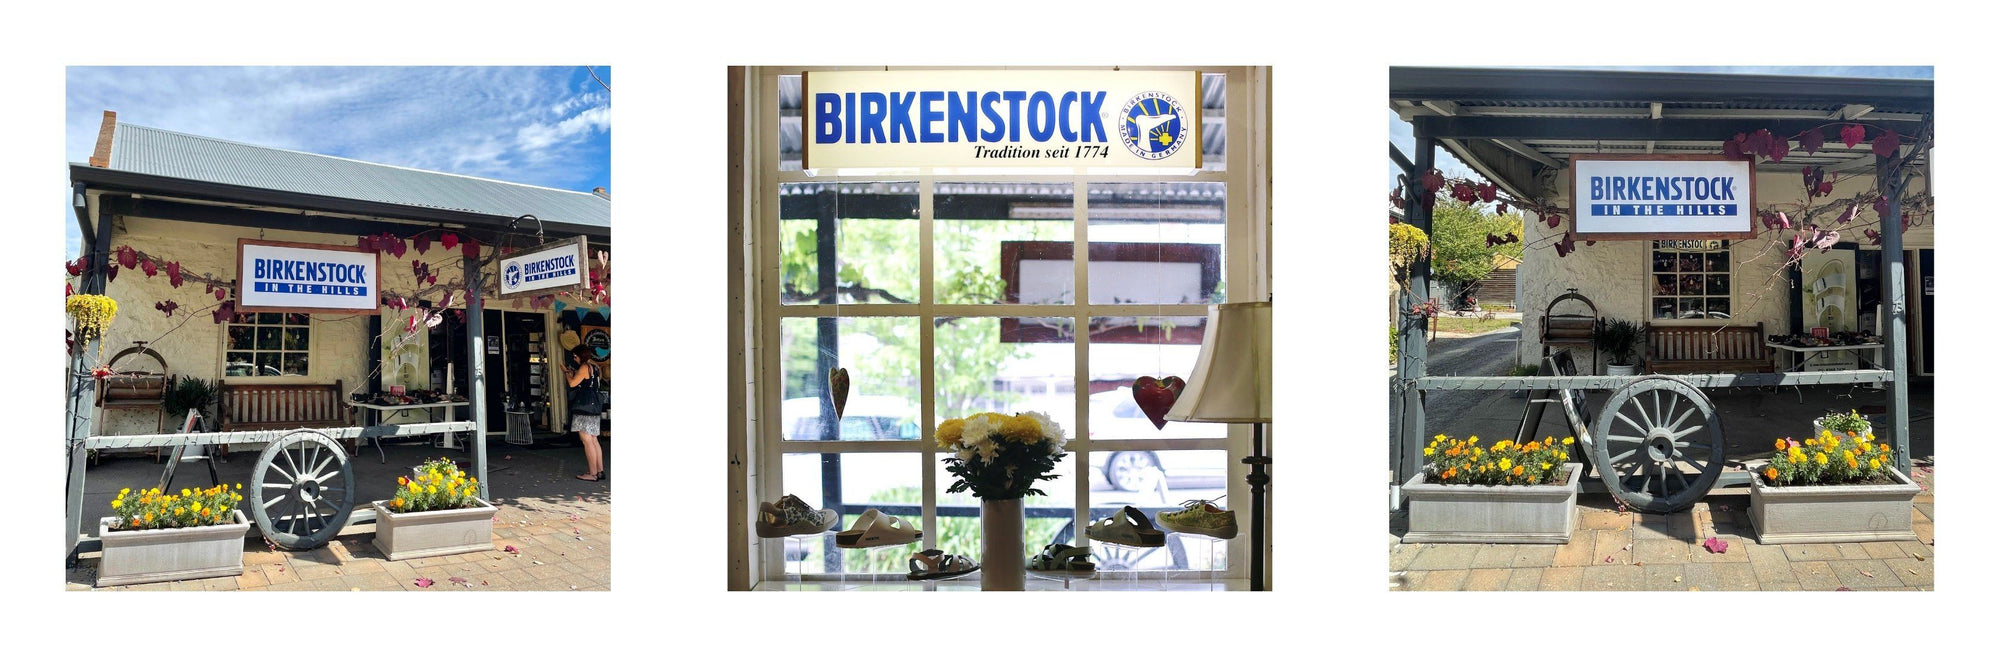 Birkenstock in the Hills History